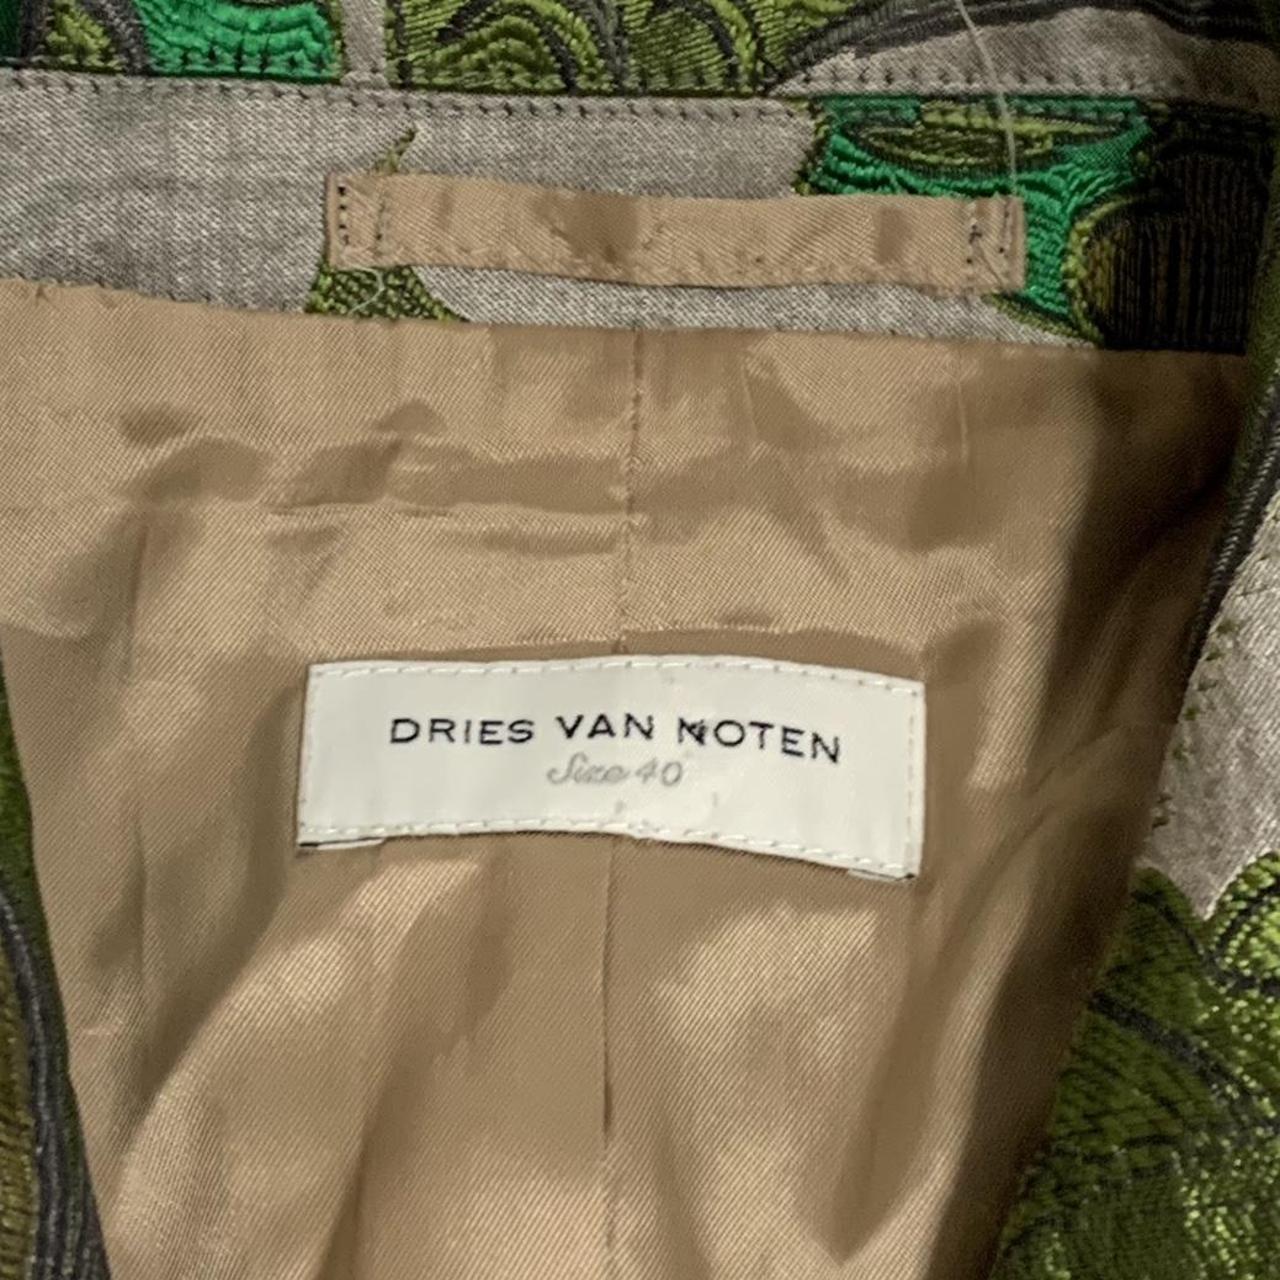 Dries Van Noten Women's Green and Black Jacket (4)